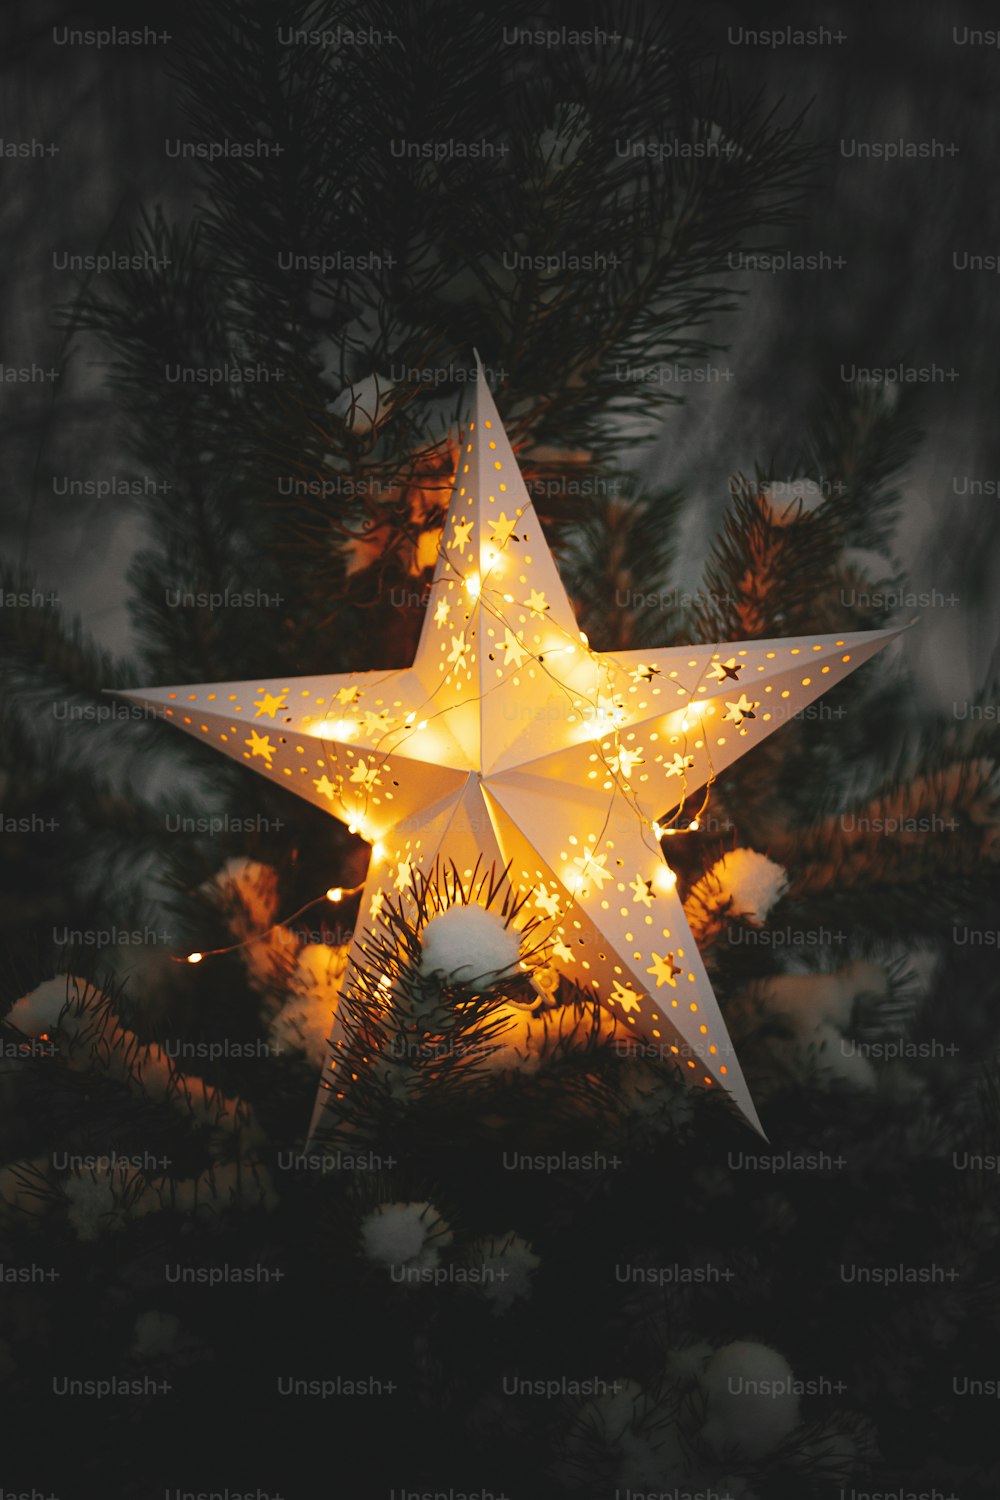 밤에 겨울 공원의 눈 덮인 소나무에서 빛나는 큰 크리스마스 별이 닫힙니다. 분위기 있는 마법의 겨울 시간. 저녁에 조명 된 크리스마스 별. 즐거운 성탄절! 크리스마스 기적